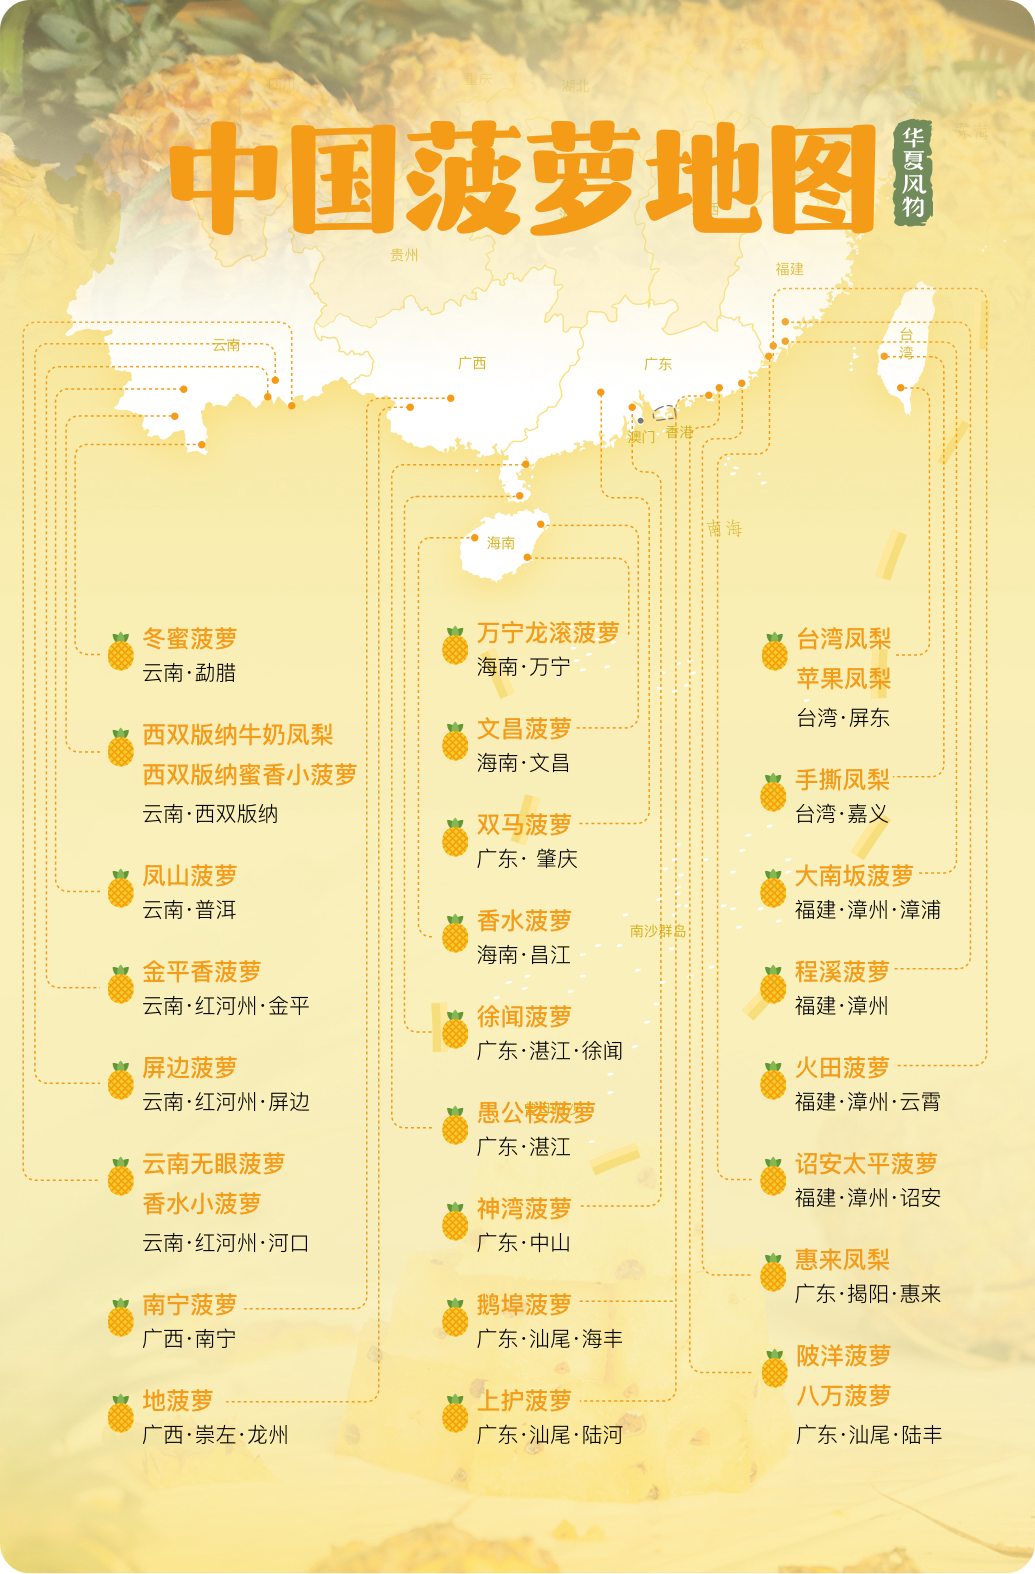 中国菠萝主要产区分布图，广东、海南、广西以反季节种植为主，果实主要在冬春（1-4月）成熟上市；福建、云南则多为正造（即自然时令）栽培，果实多在夏秋季（6-8月）上市 ©华夏风物